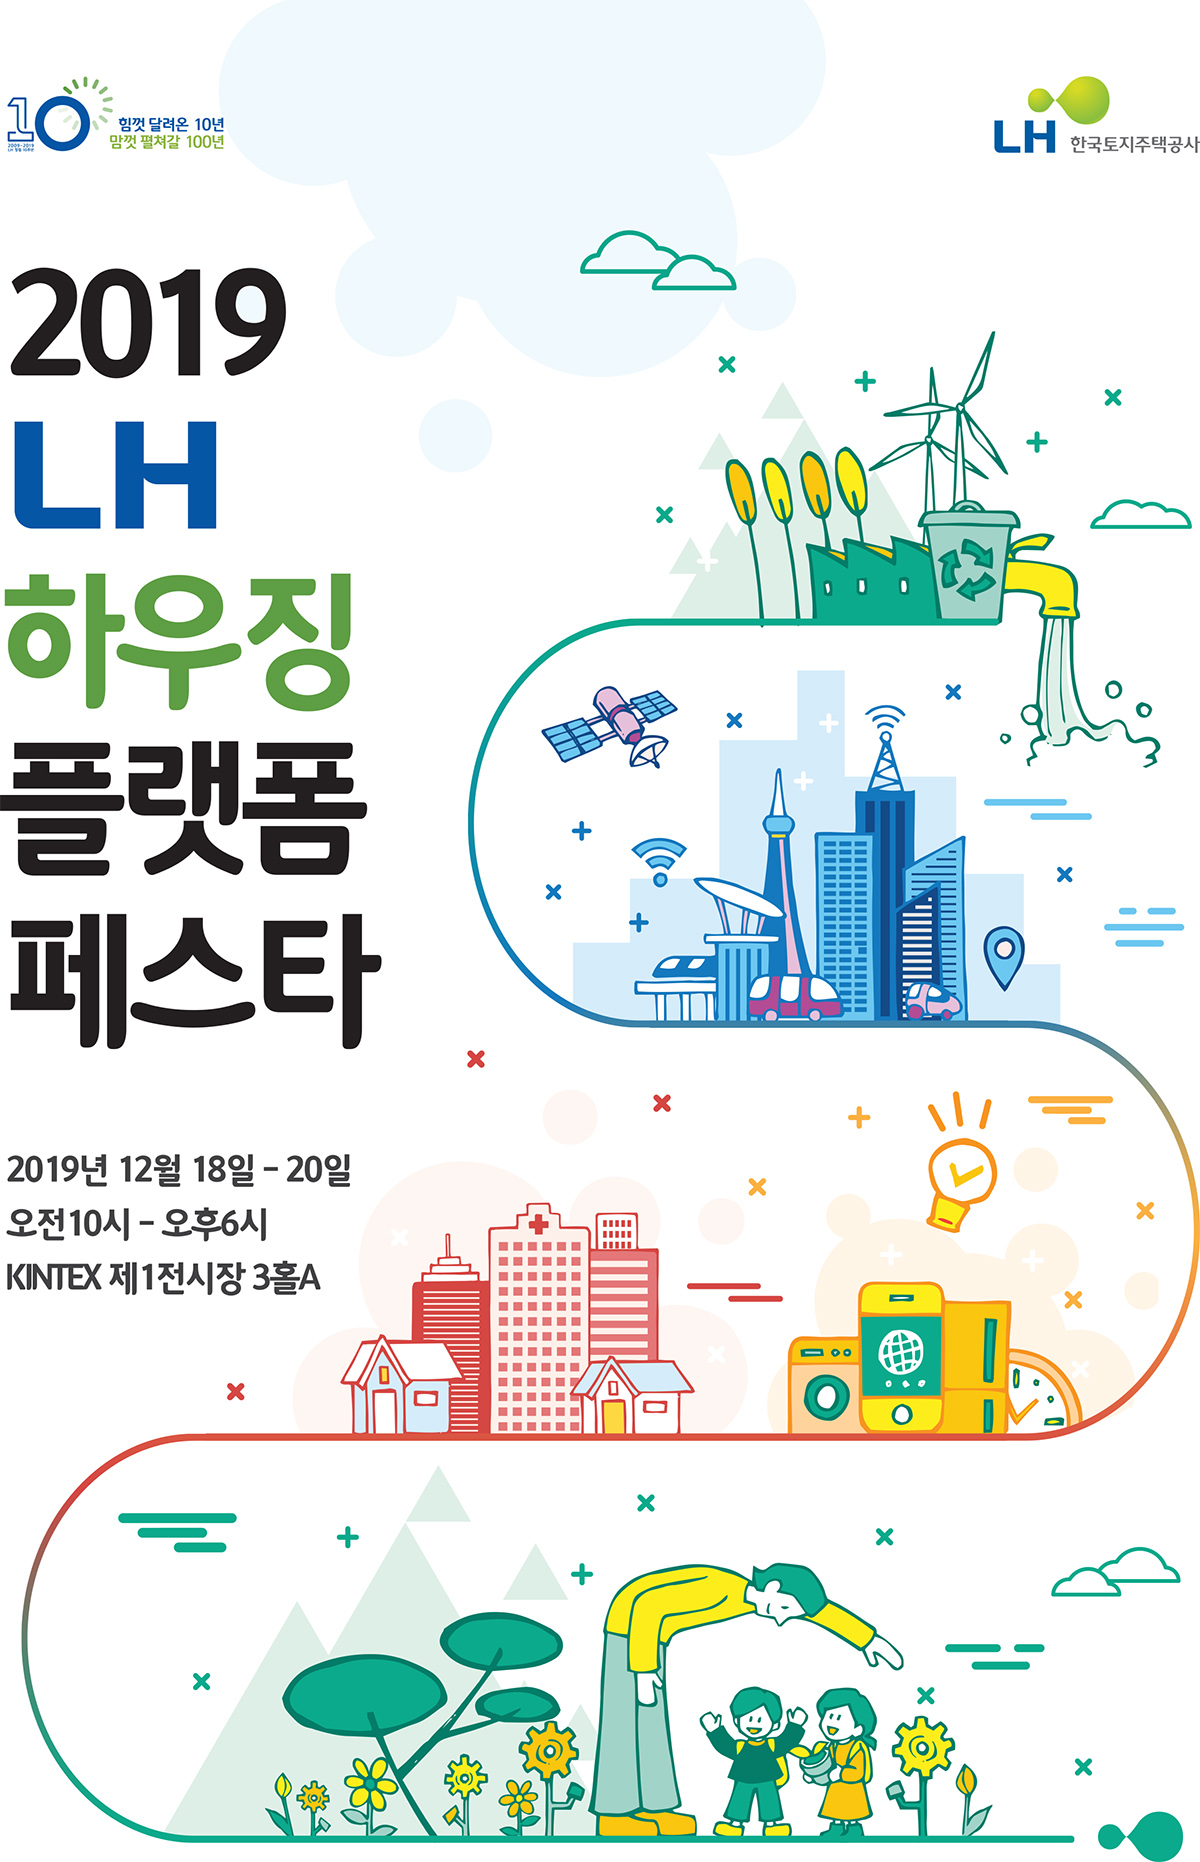 2019 LH 하우징 플랫폼 페스타 - 2019년 12월 18일 - 20일, 오전10시 - 오후 6시, KINTEX 제1전시장 3홀A